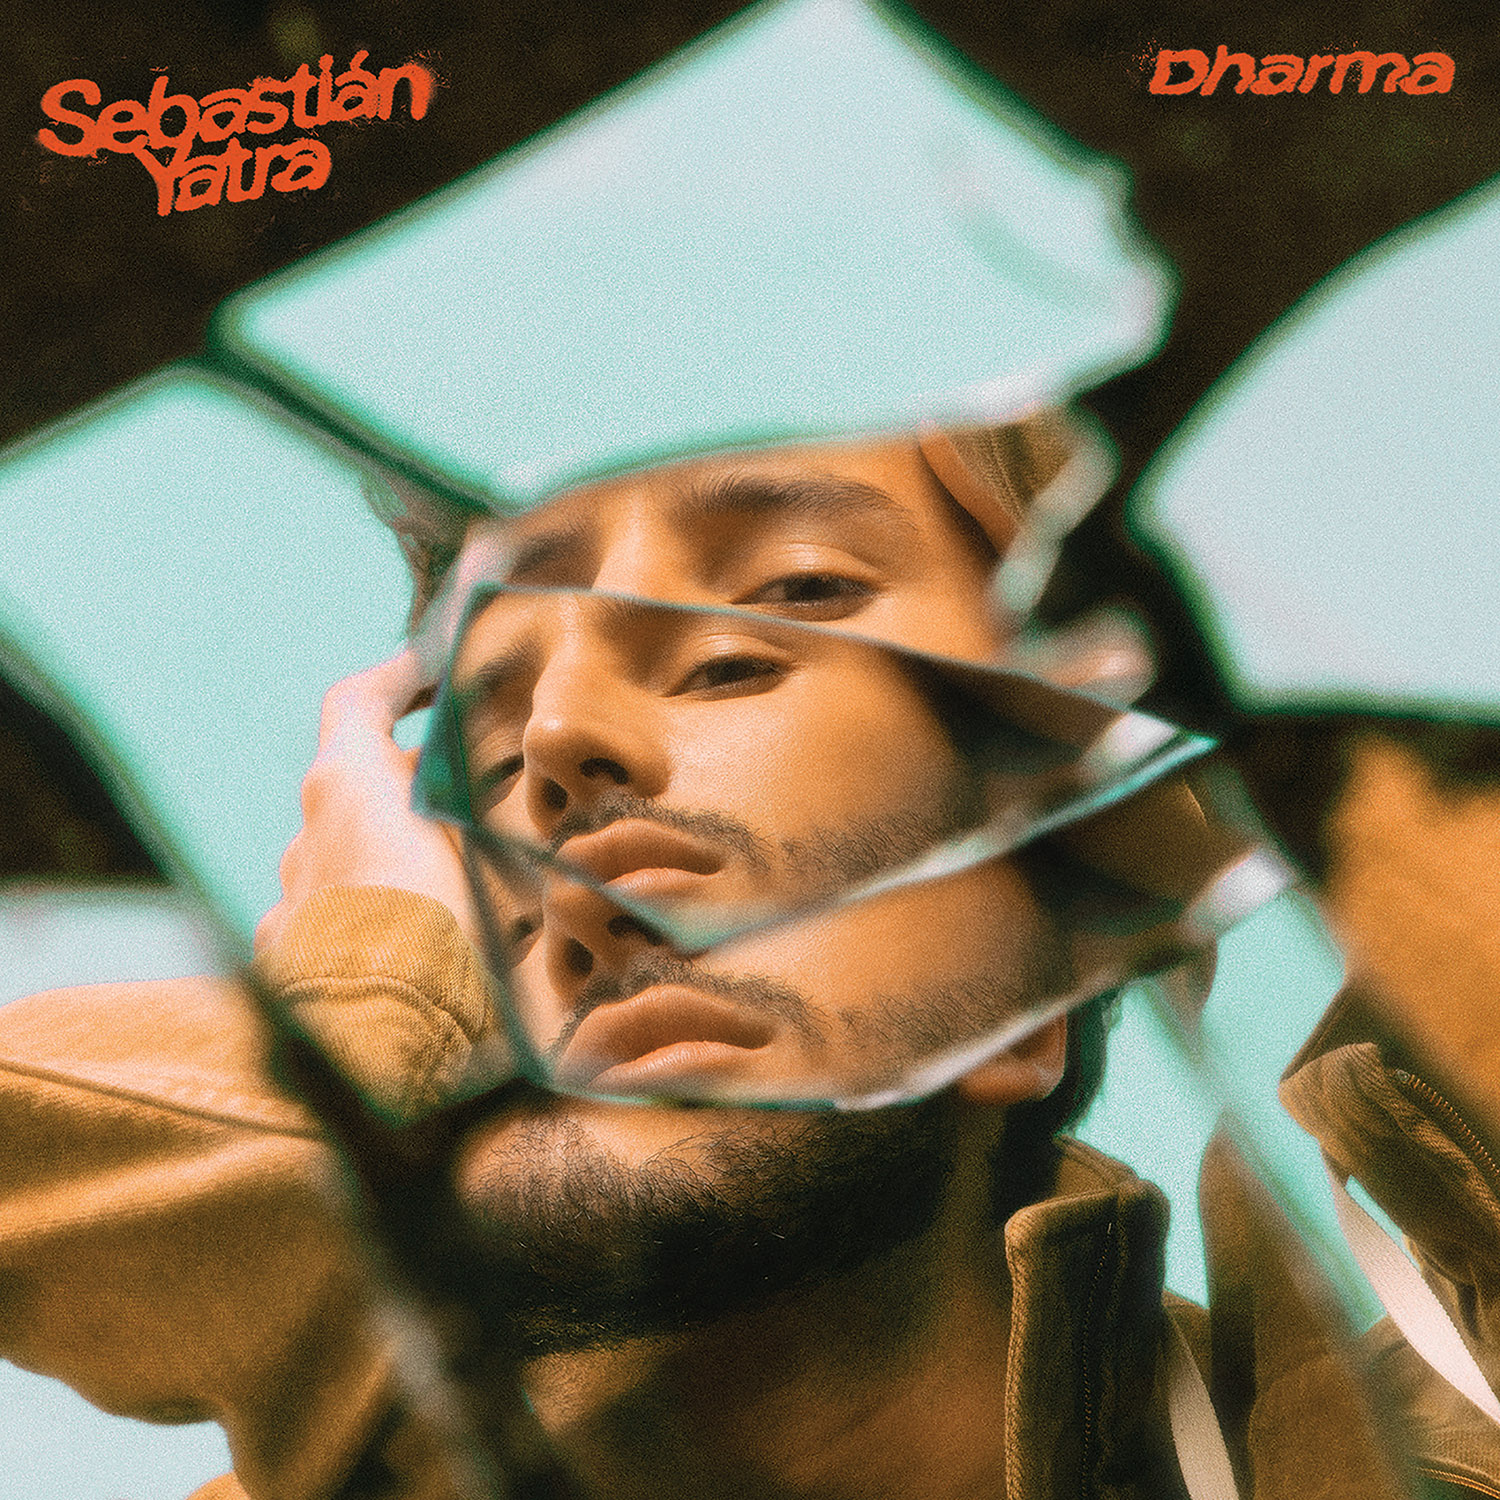 Sebastián Yatra lanza su tercer álbum “Dharma”